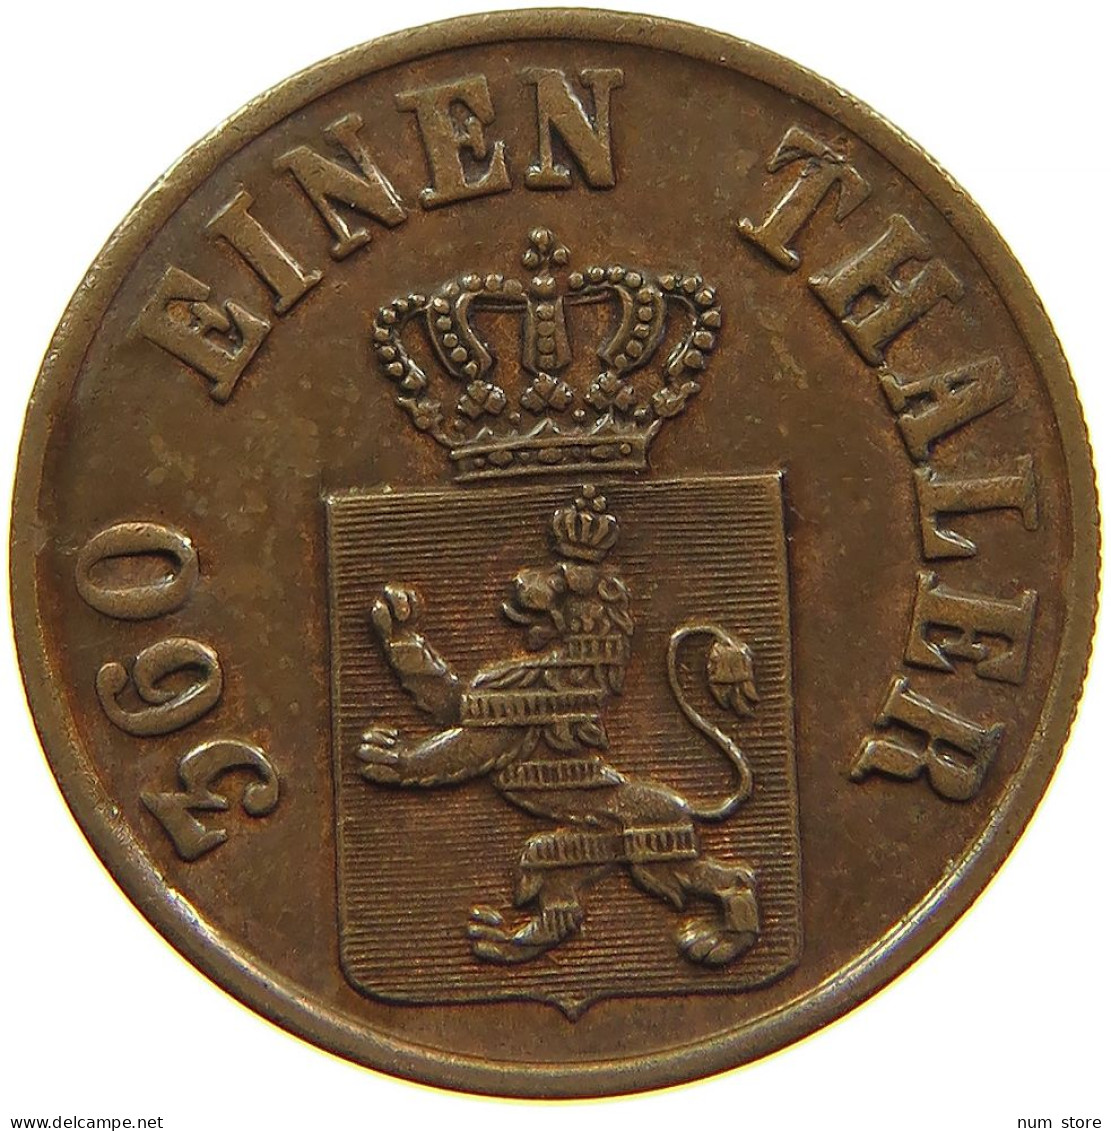 GERMAN STATES 1 HELLER 1860 HESSEN KASSEL Friedrich Wilhelm I. 1847-1866 #t032 1015 - Monedas Pequeñas & Otras Subdivisiones